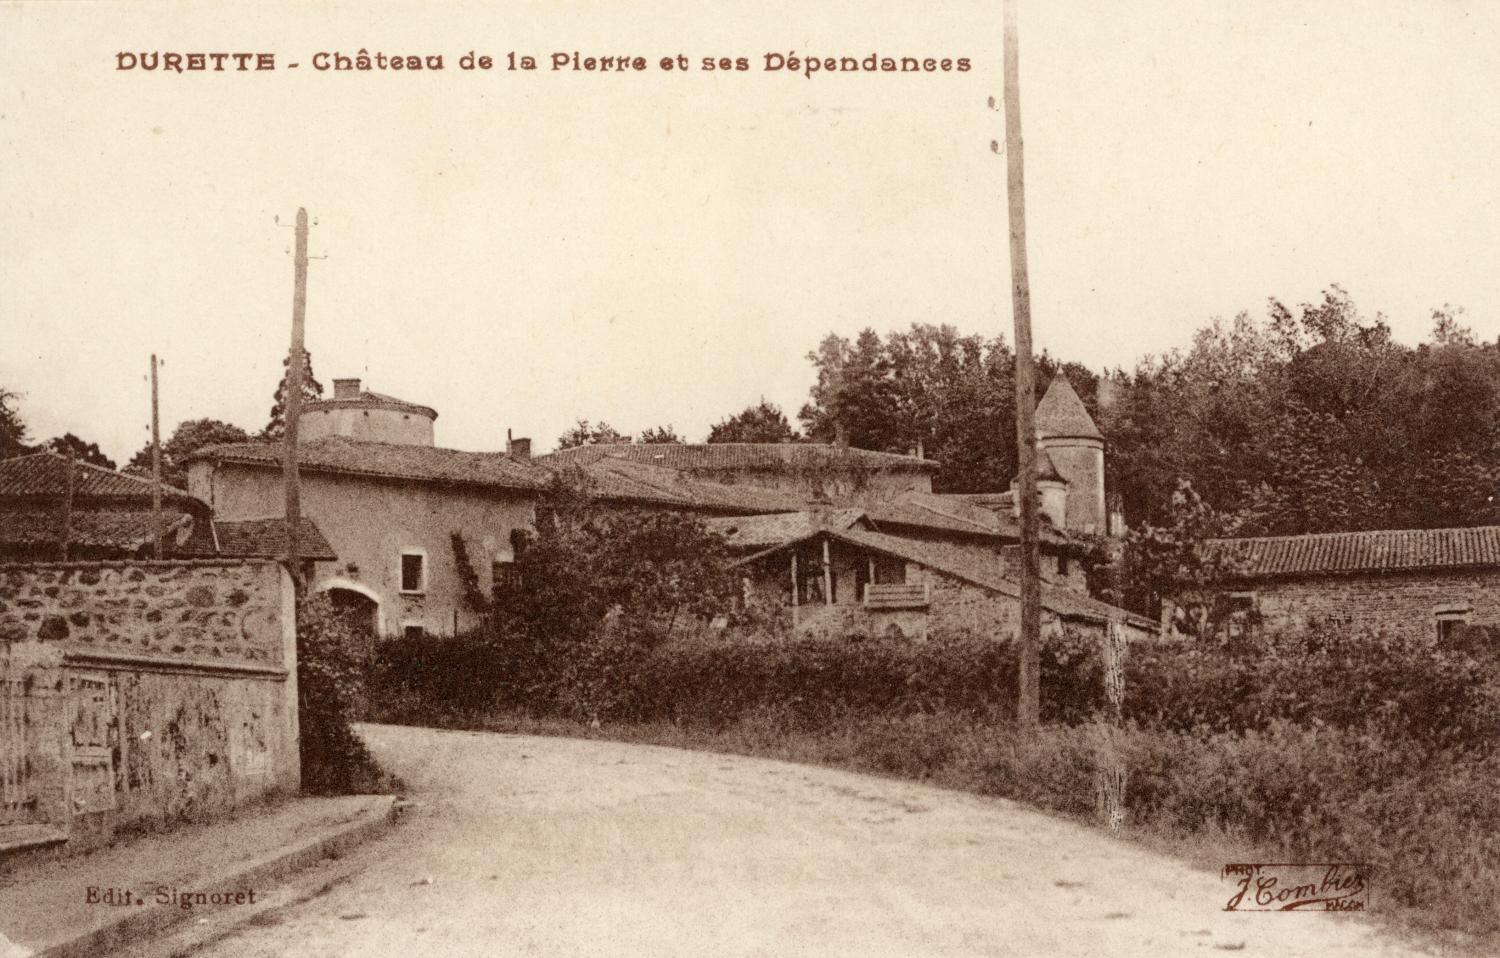 Durette. - Château de la Pierre et ses Dépendances